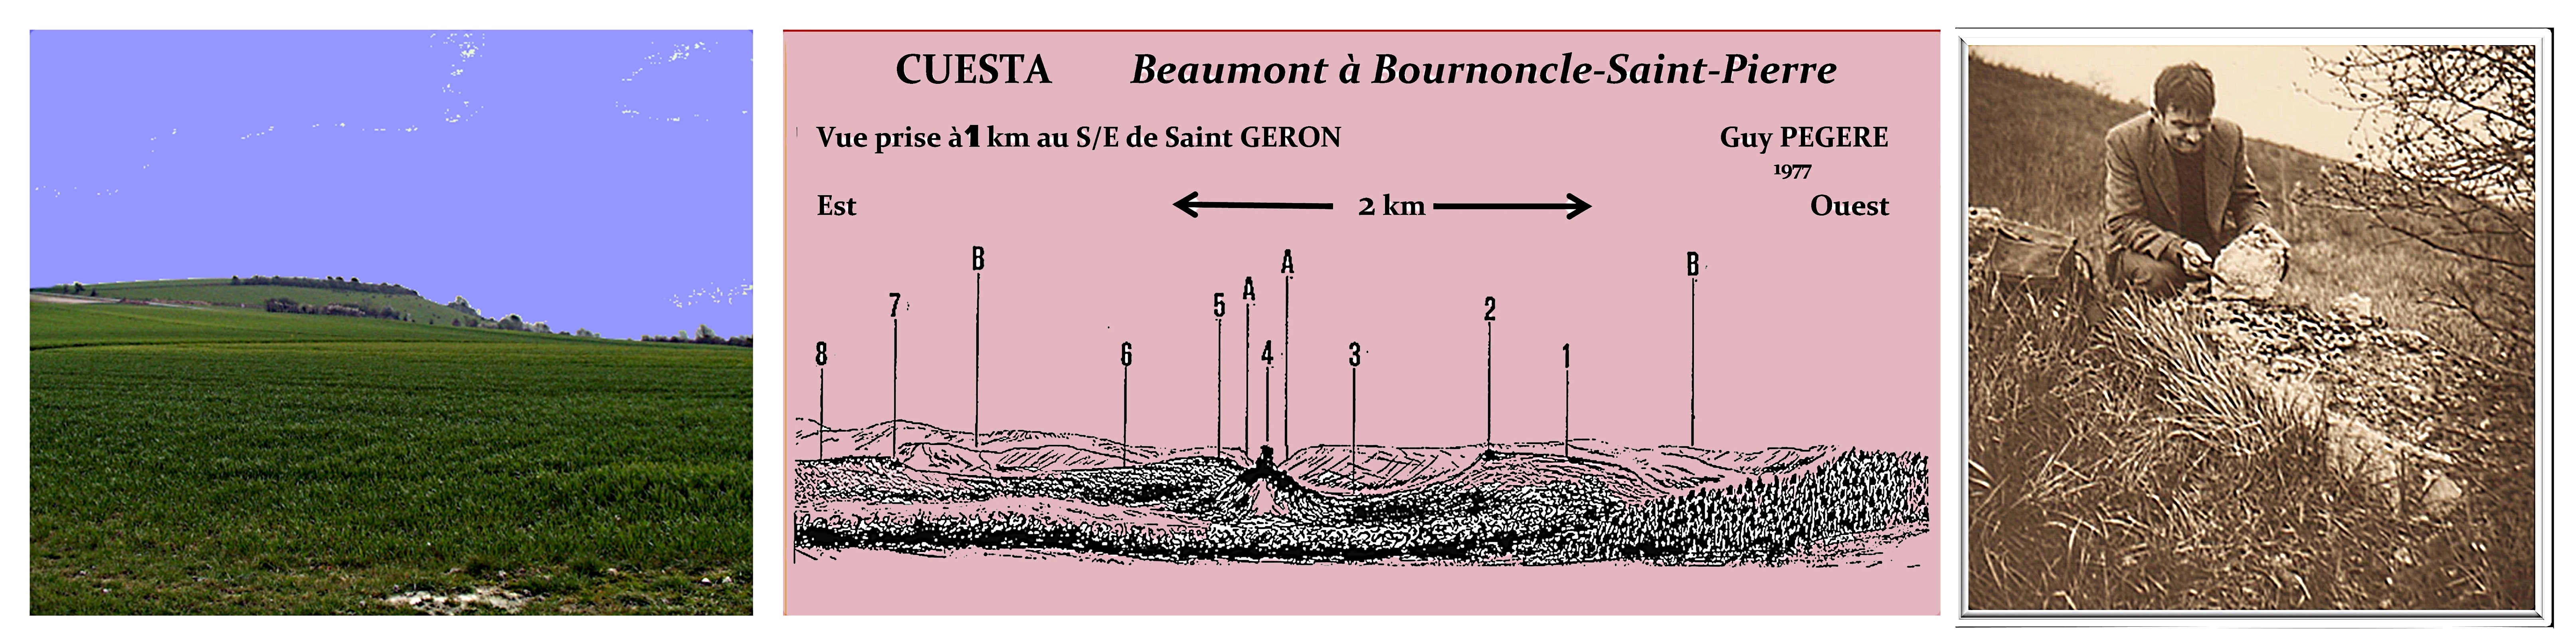 Guy Pegere La Cuesta Tropicale de Beaumont-Bournoncle 43